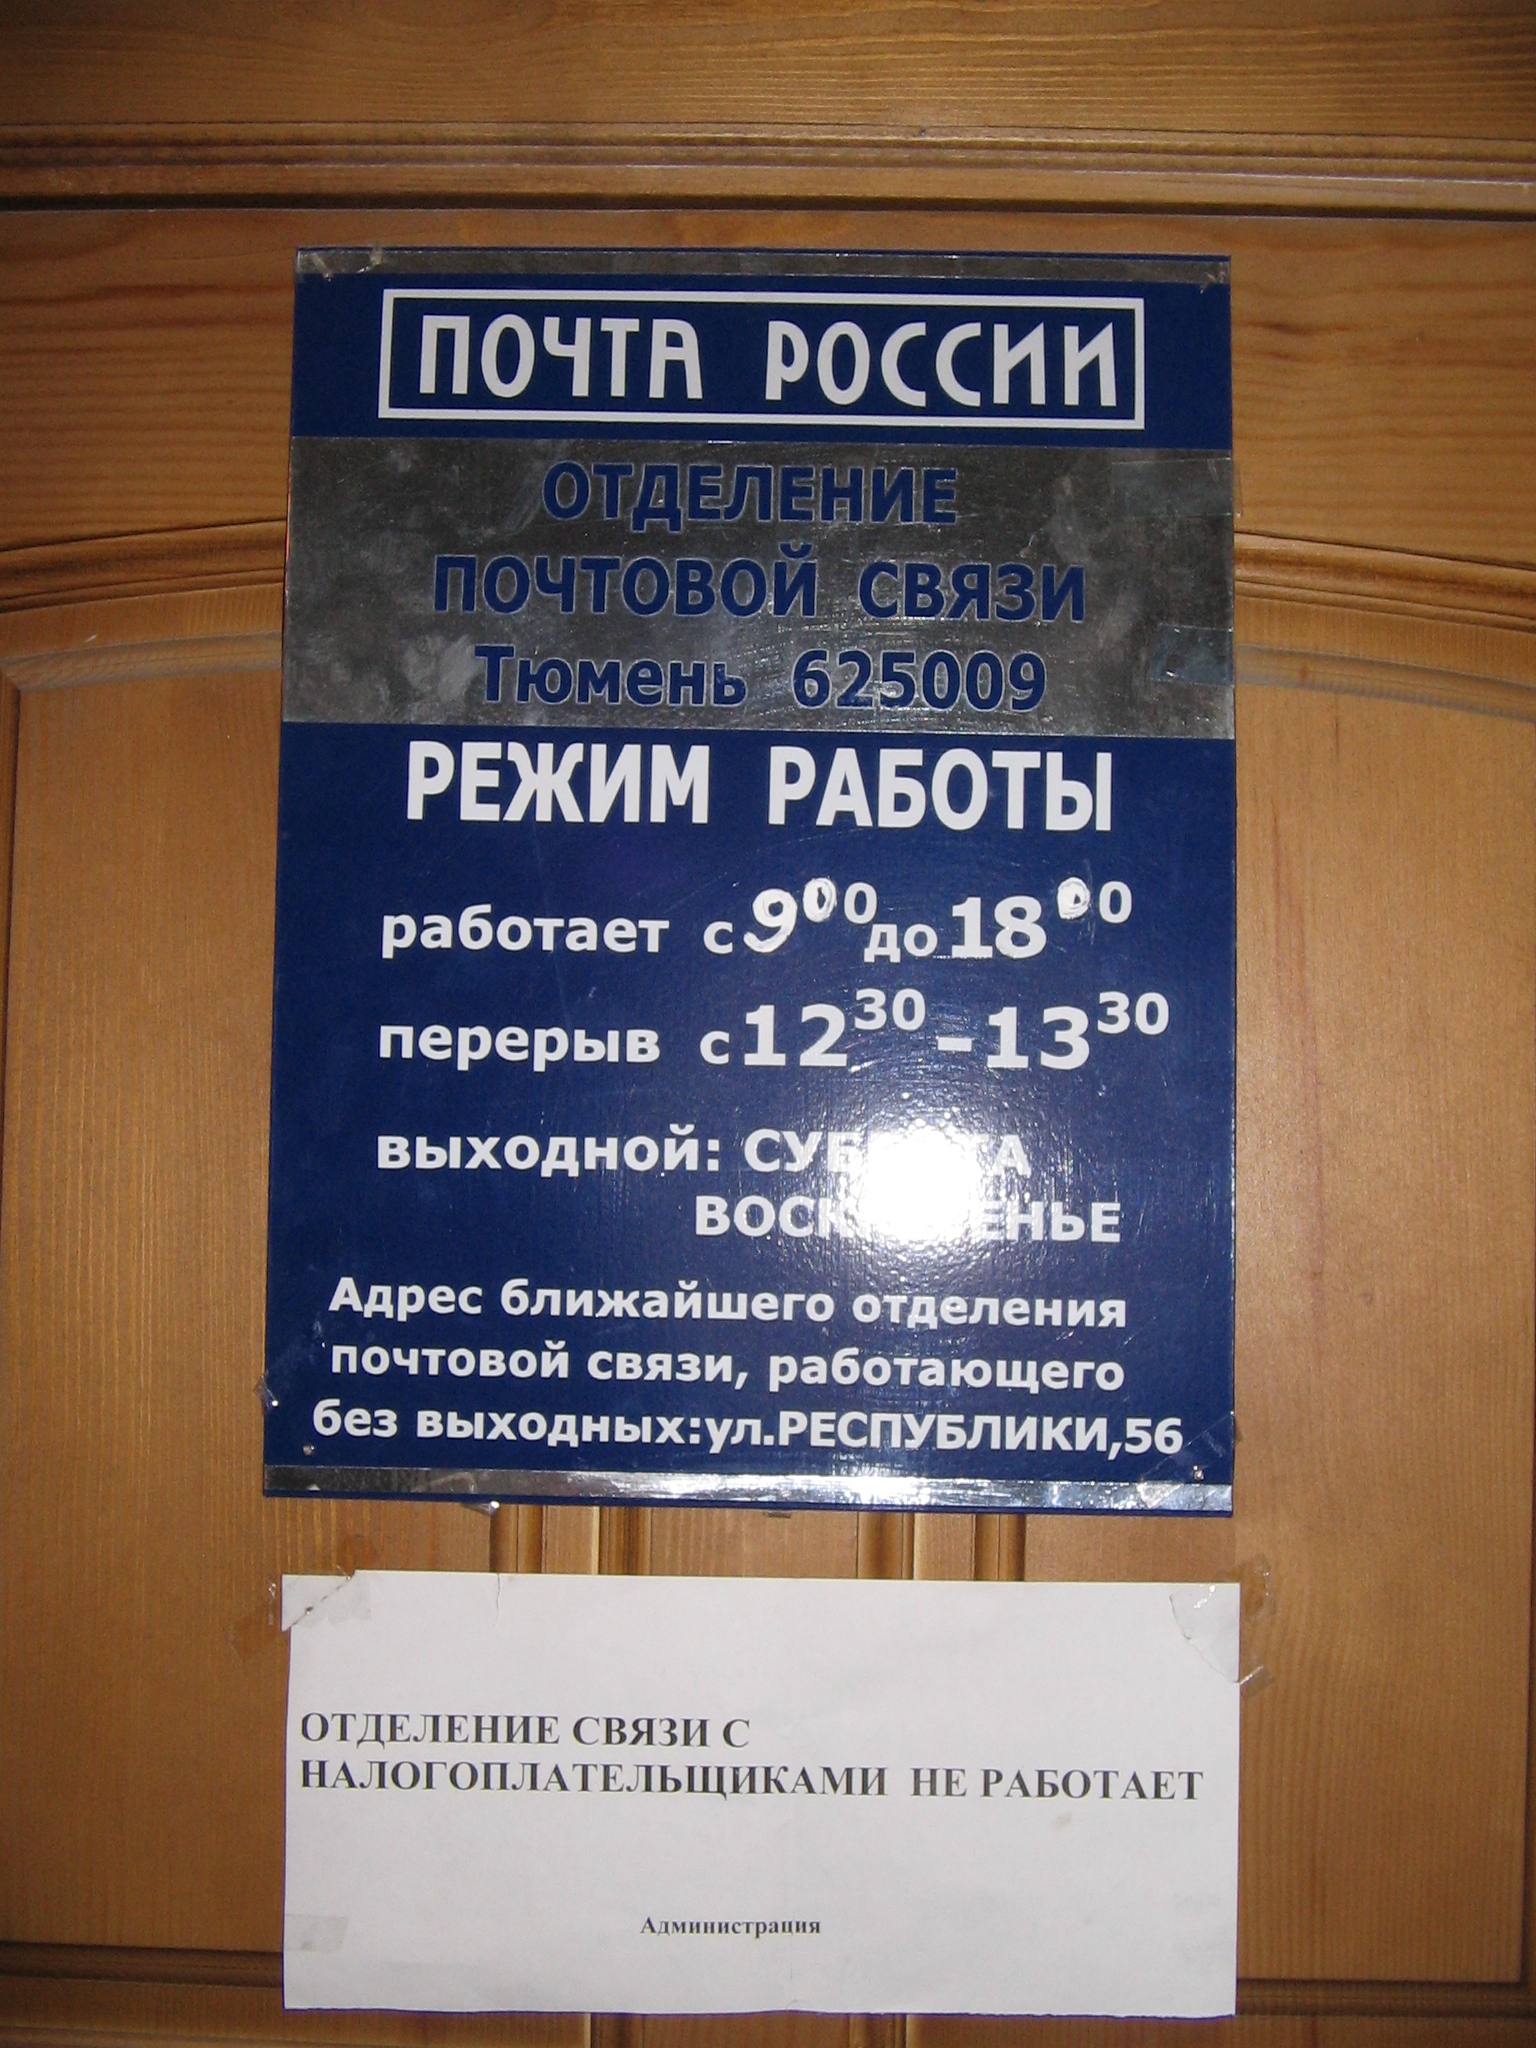 ВХОД, отделение почтовой связи 625009, Тюменская обл., Тюмень